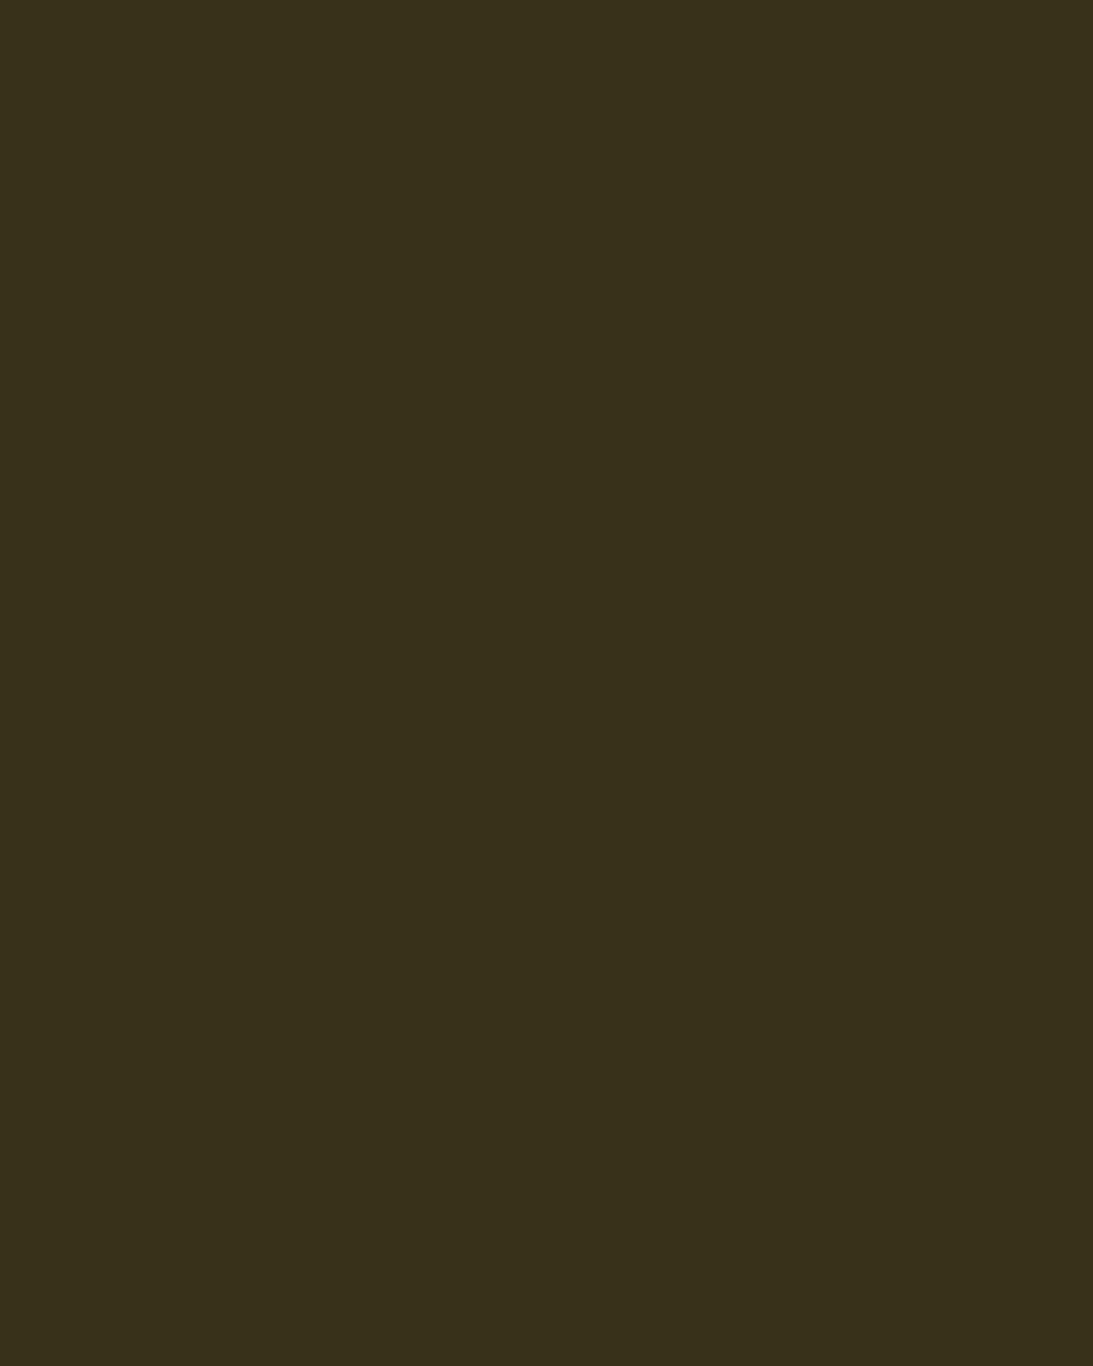 Август Тишбейн. Портрет Карла Фридриха (фрагмент). 1804. Фонд веймарского классицизма, Веймар, Германия